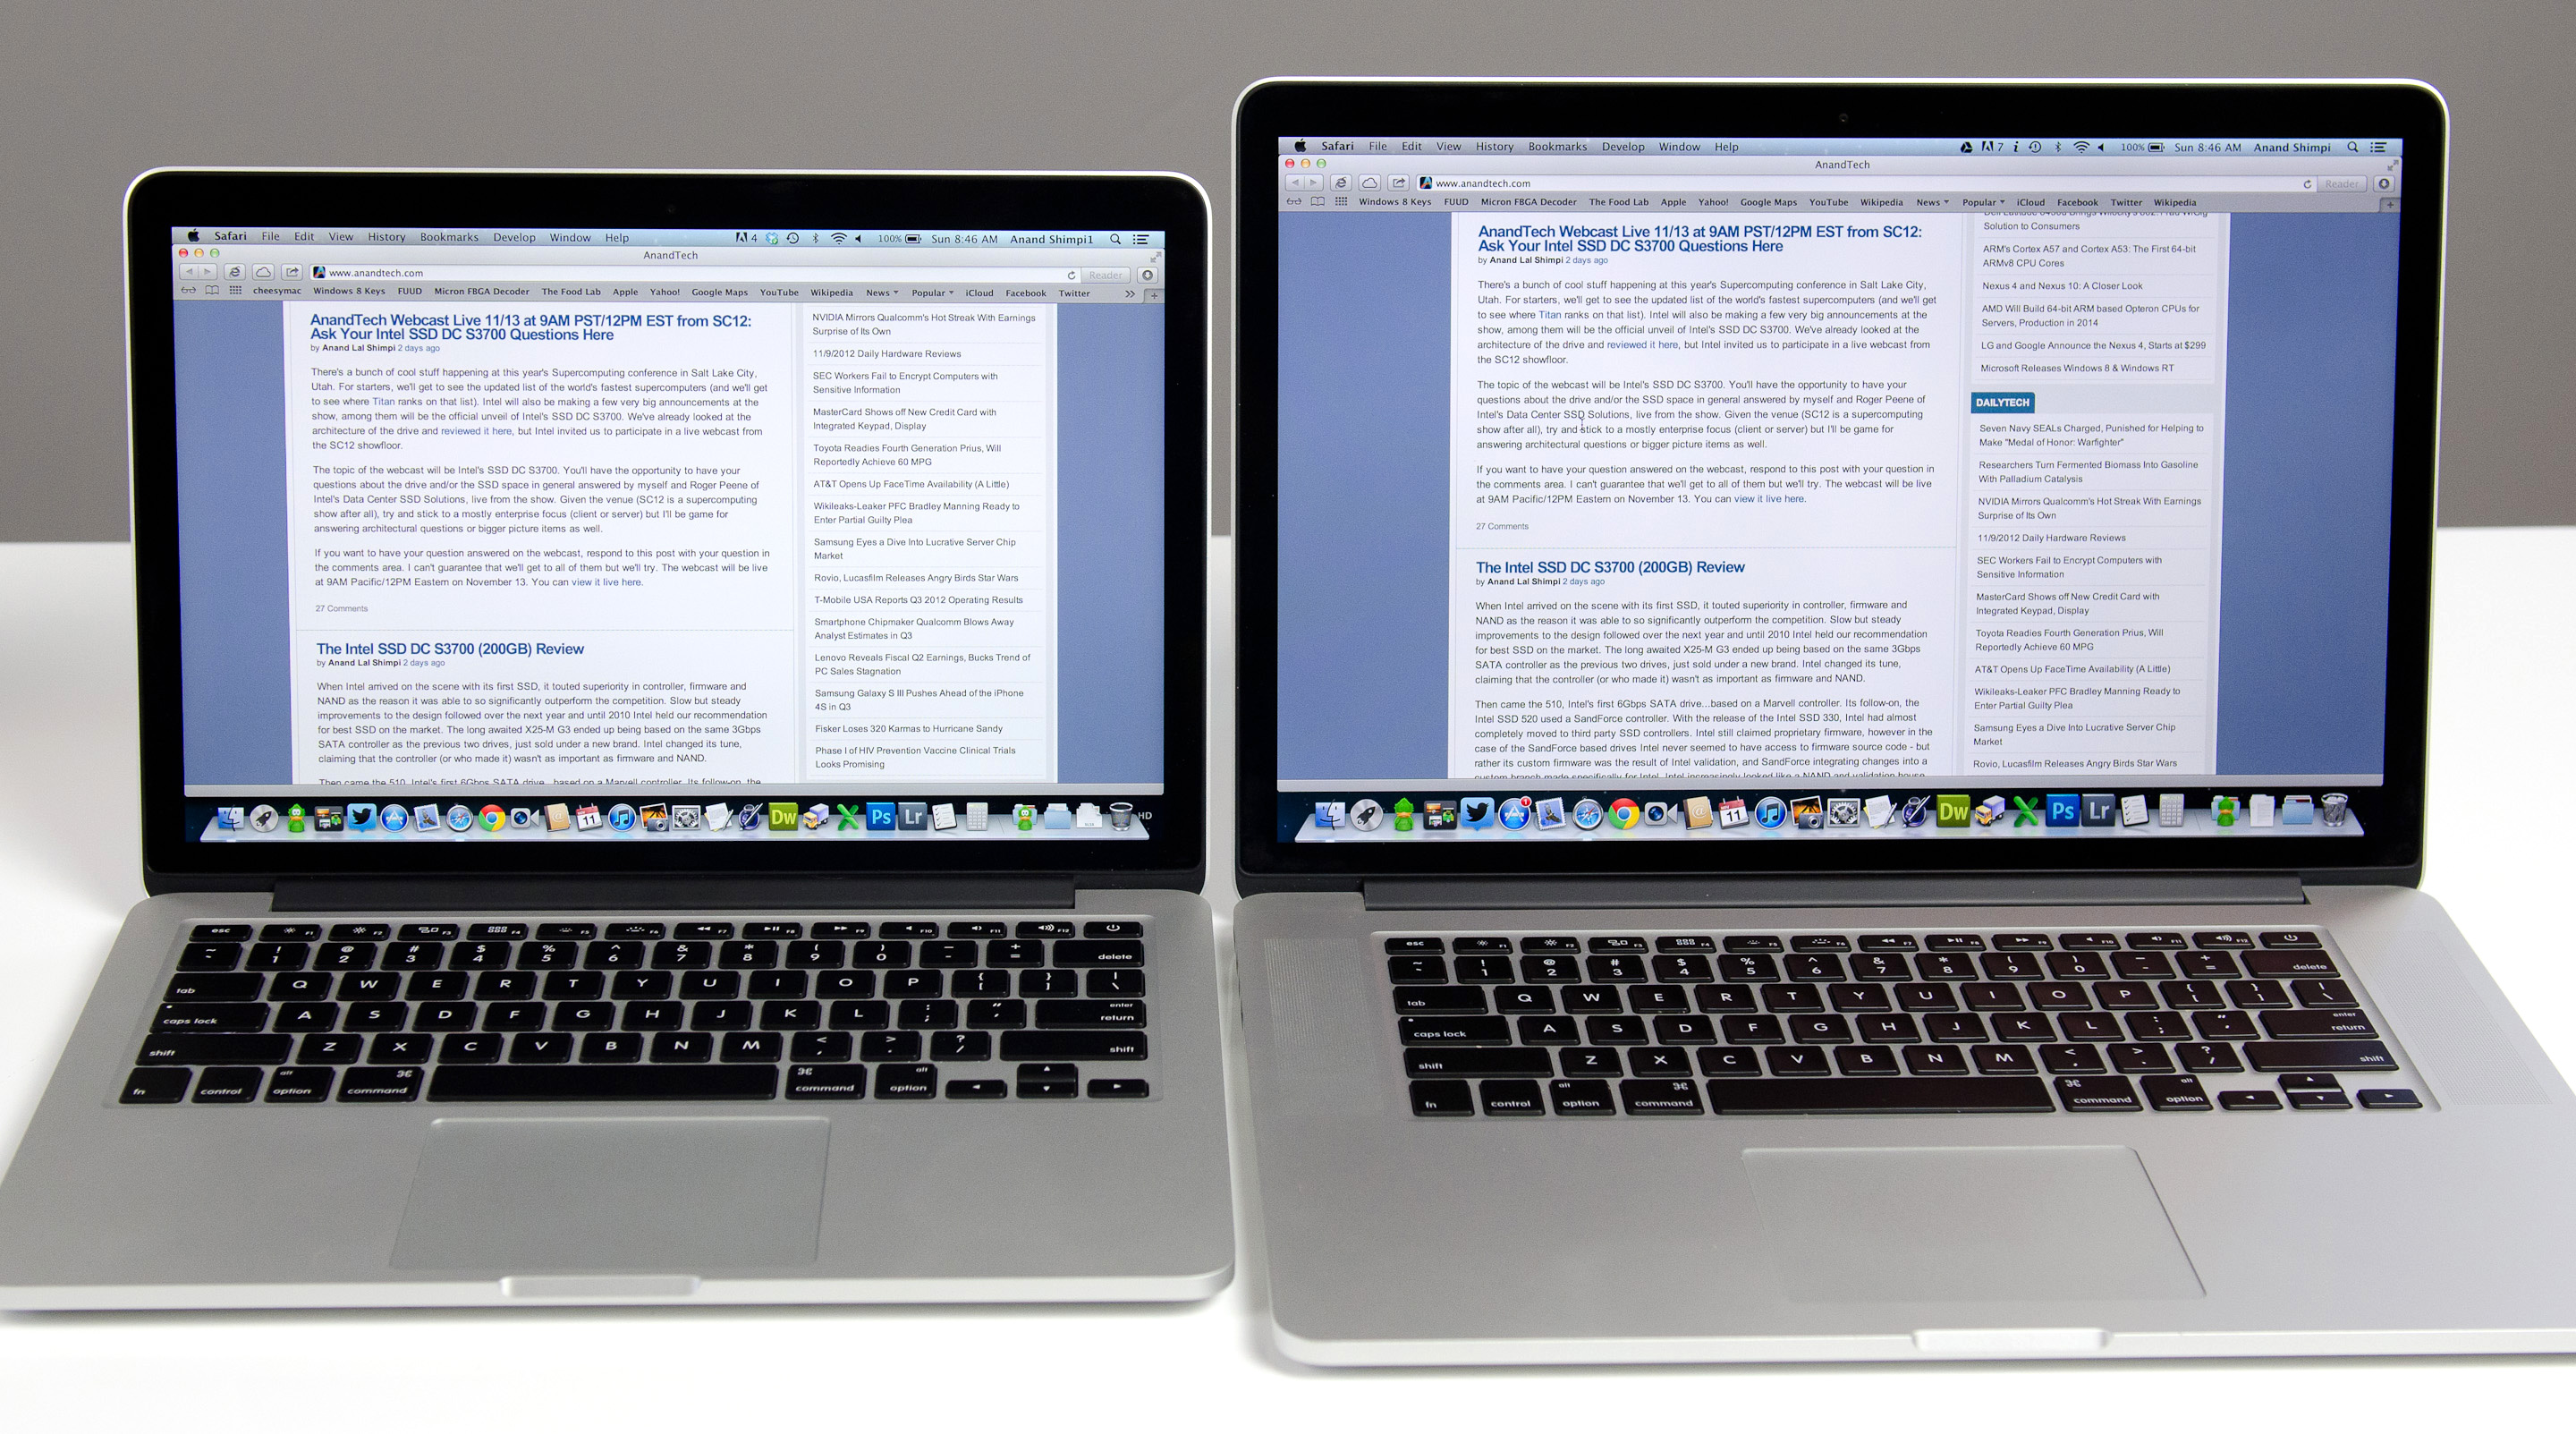 Review for macbook pro retina display 15 inch apple macbook pro 2015